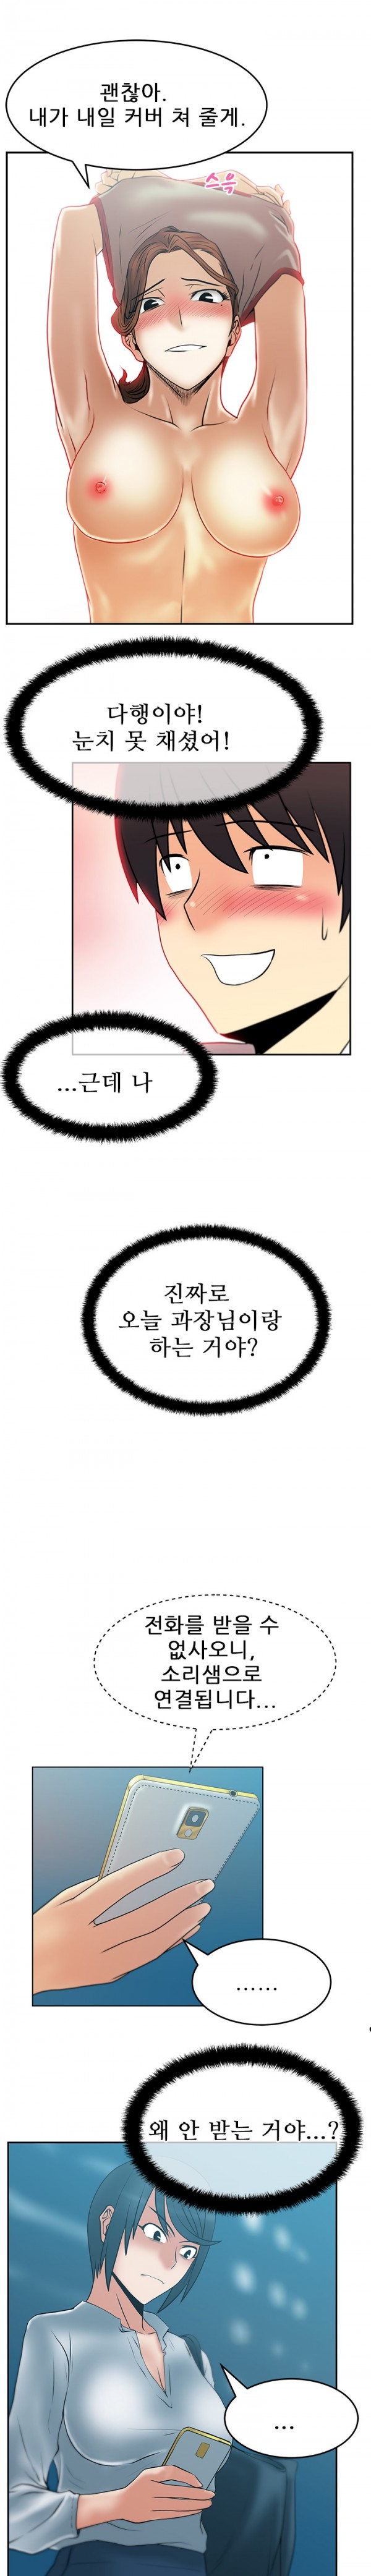 [Minu Mindu] Office Lady Vol. 1 [Korean] 331